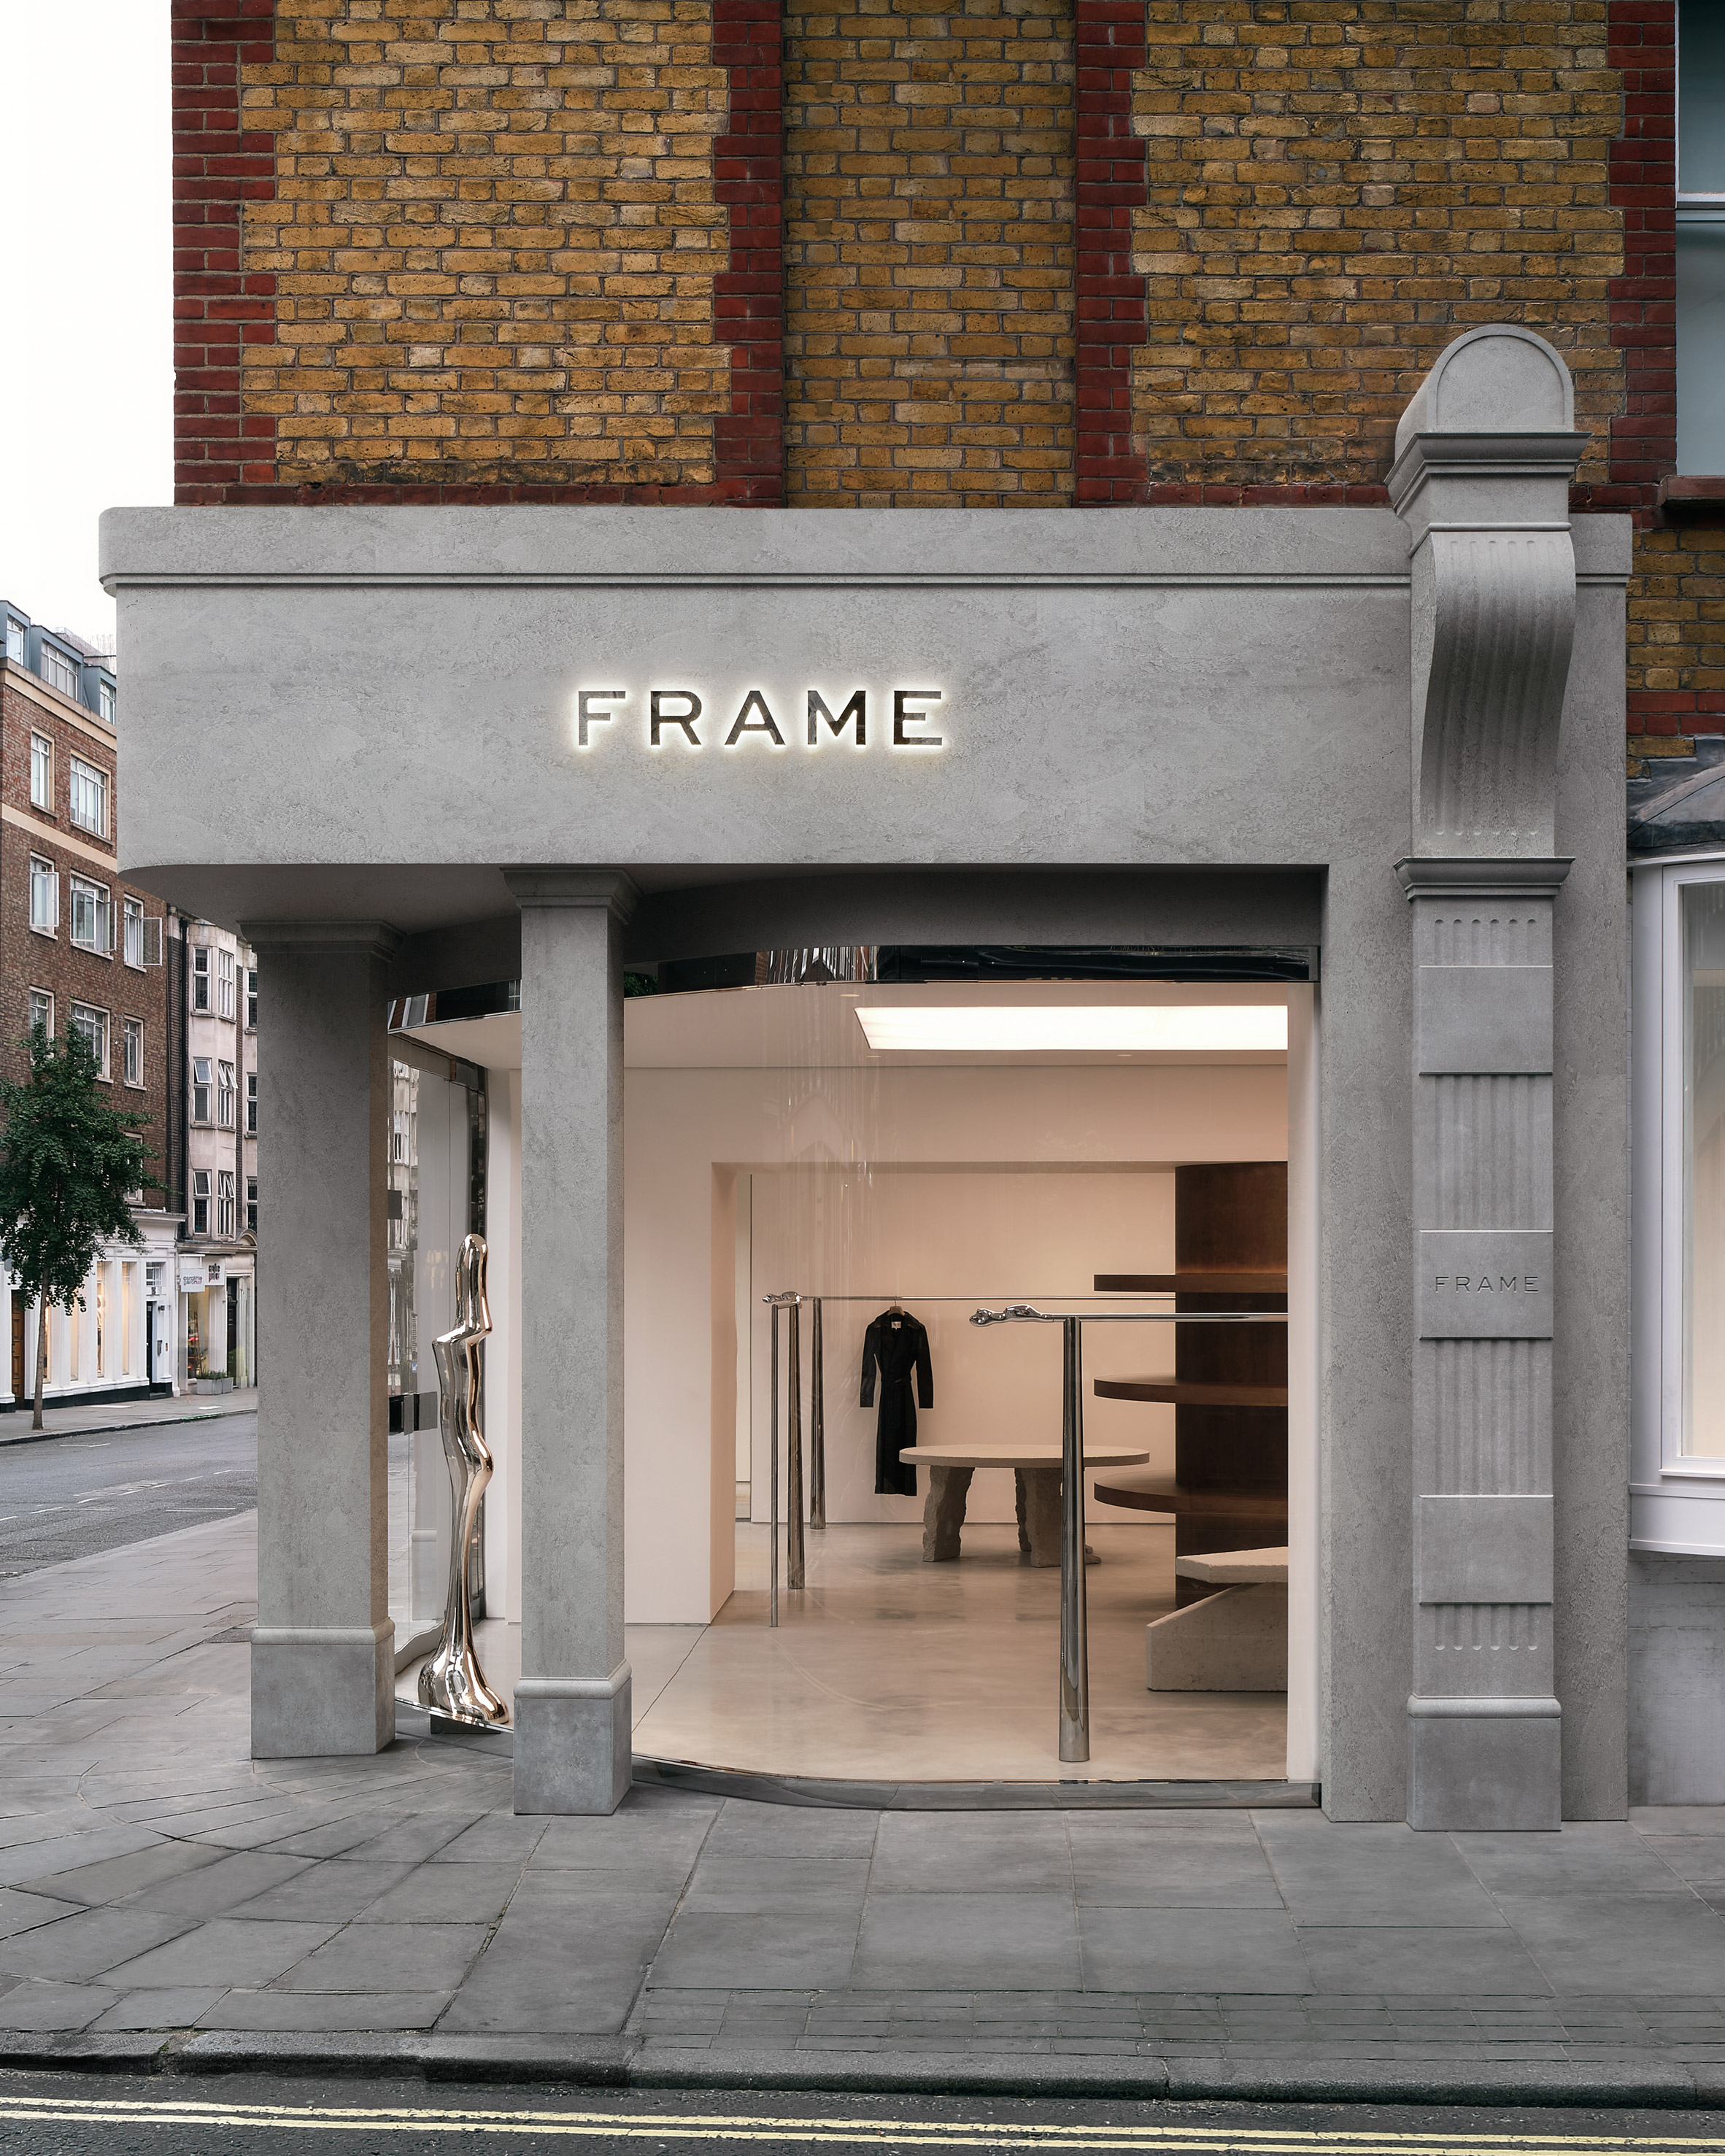 Studio FB为马里波恩的Frame商店打造画廊般的室内设计|ART-Arrakis | 建筑室内设计的创新与灵感